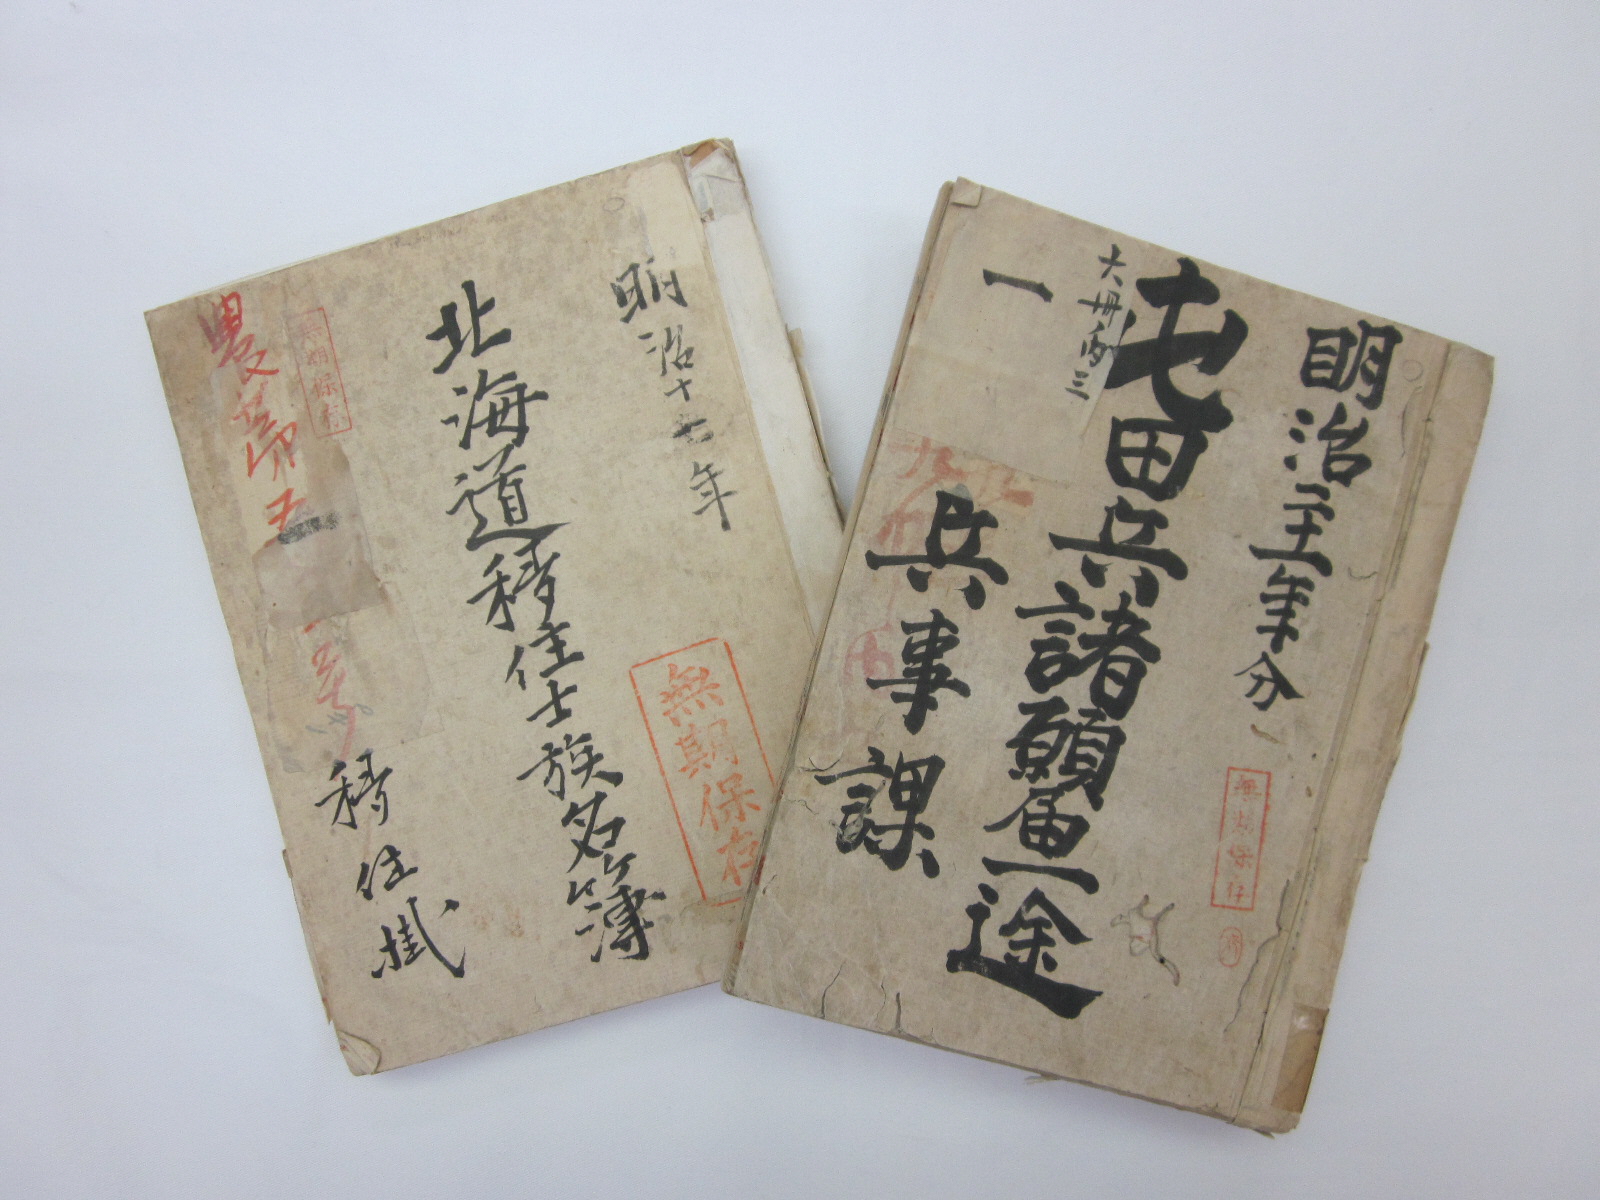 「北海道移住士族名簿」と「屯田兵諸願届一途」の写真